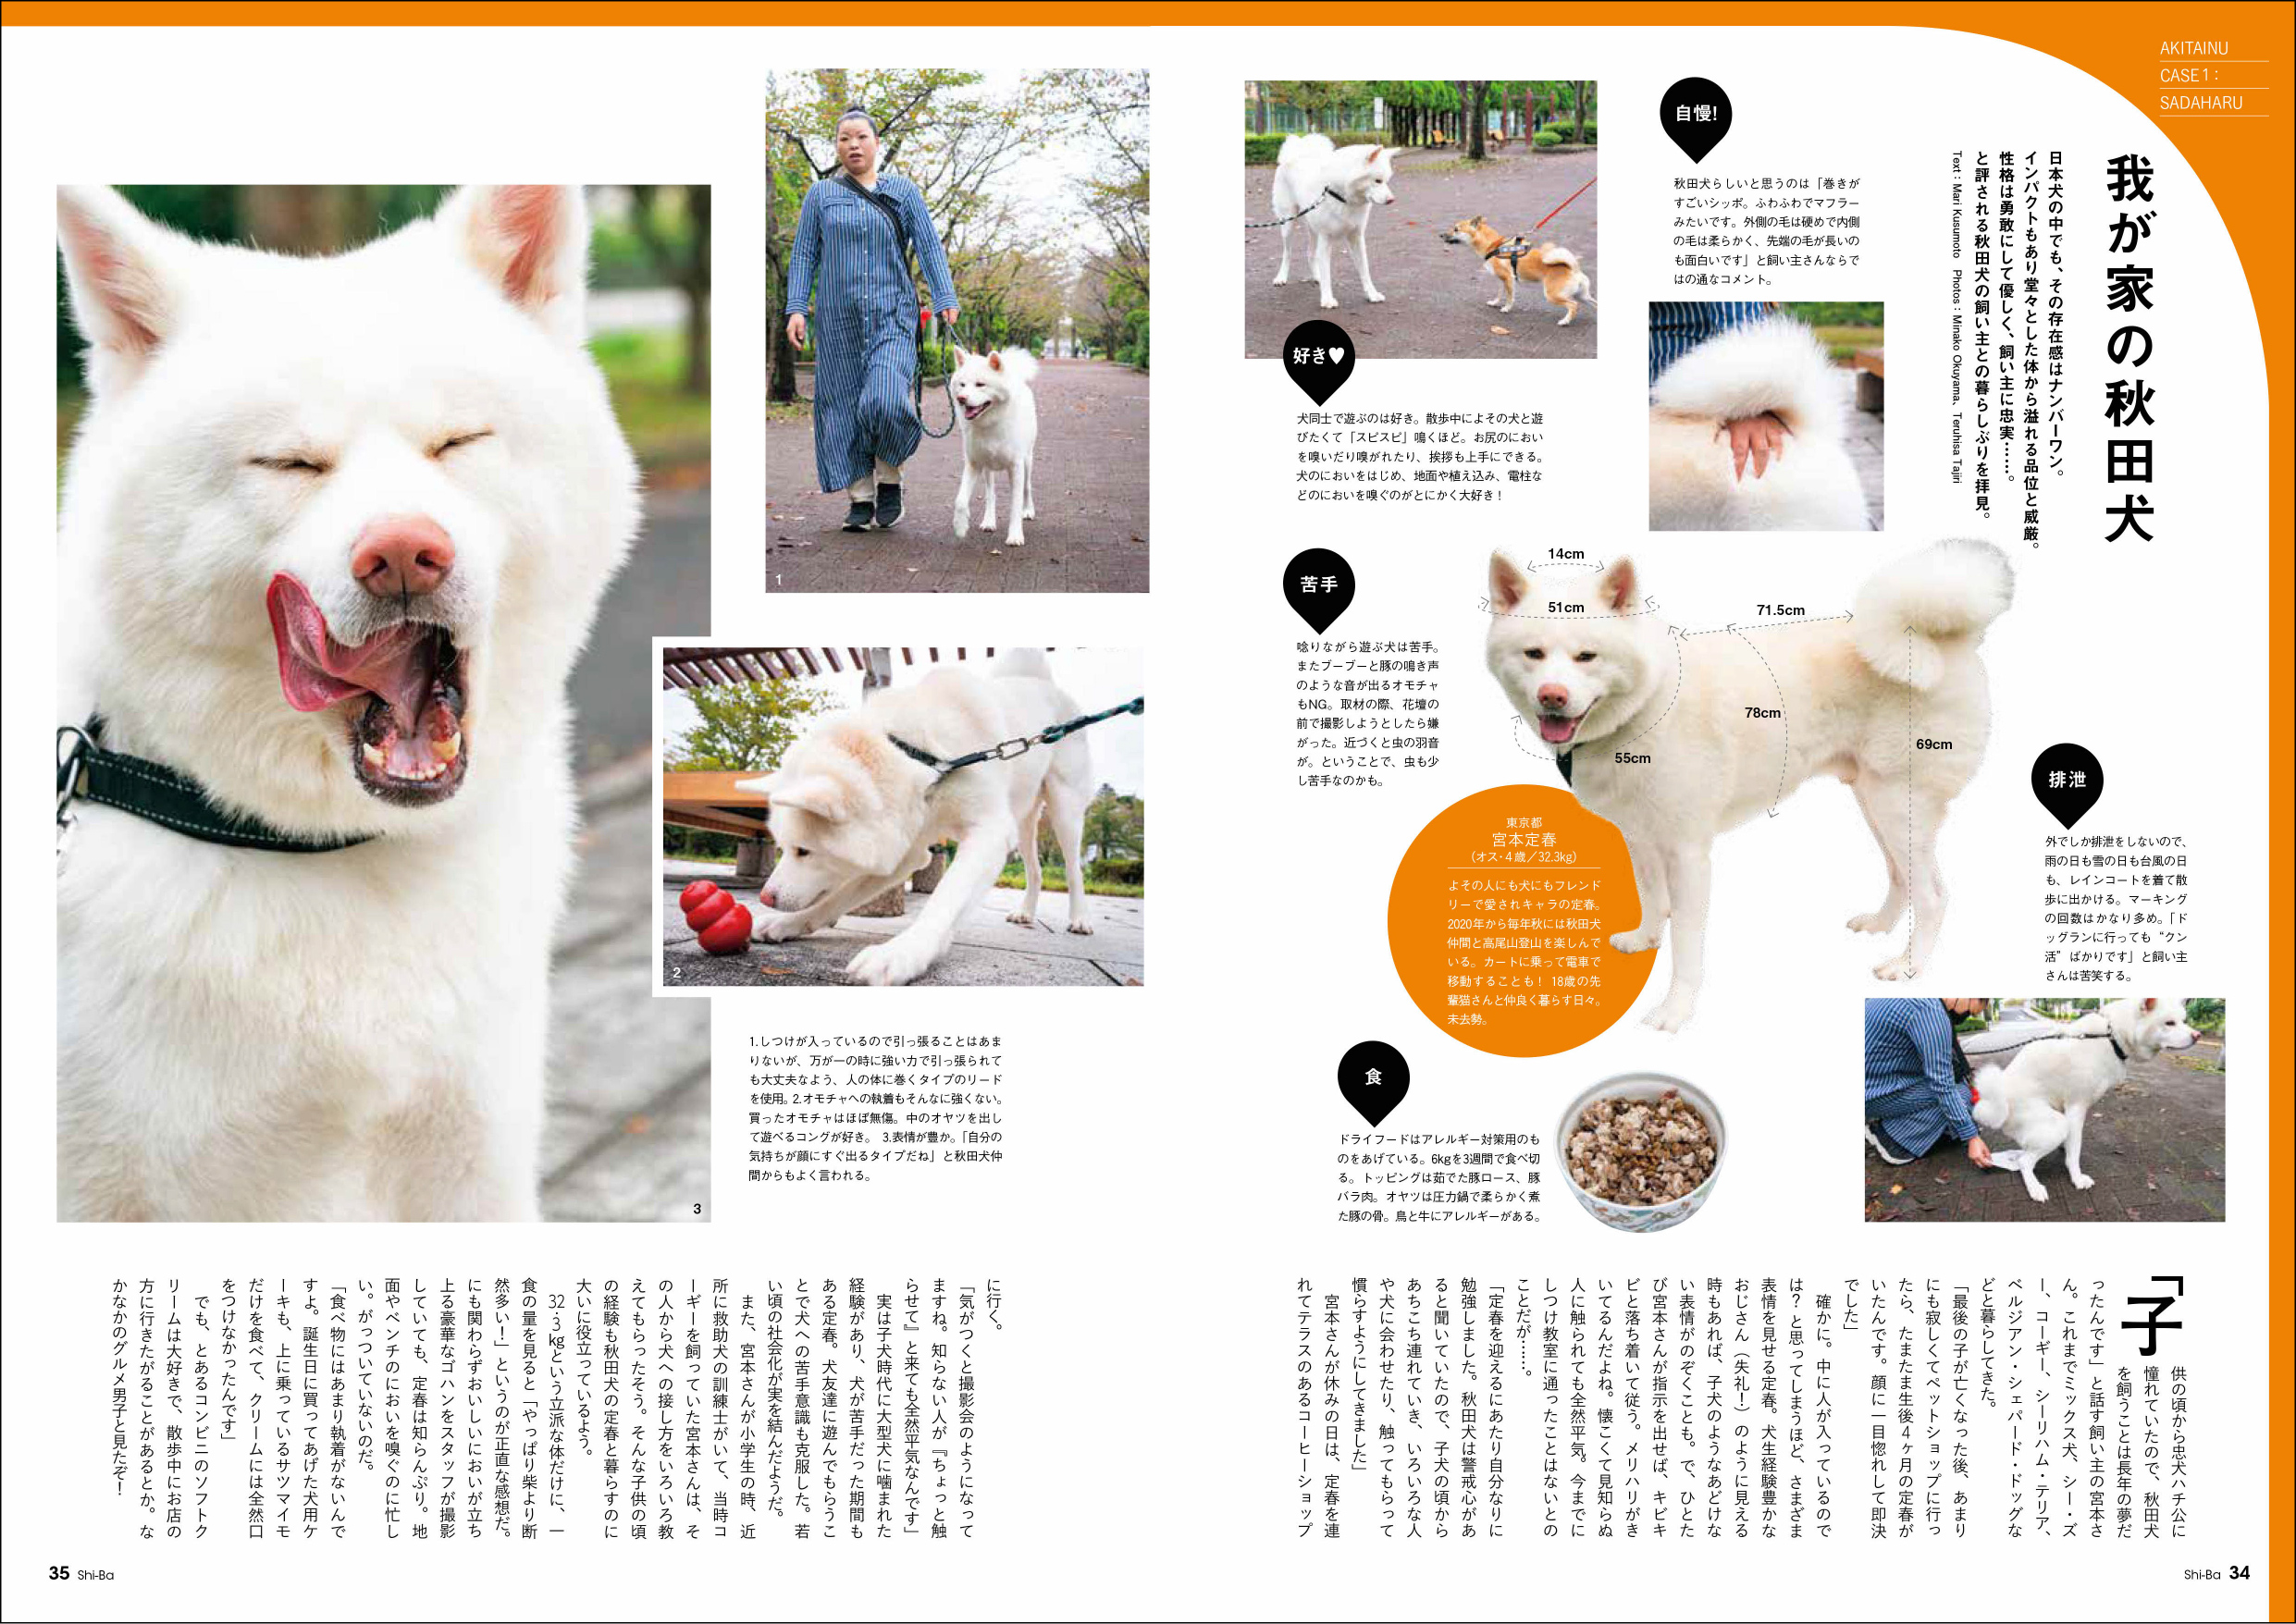 『Shi-Ba』可愛らしい「秋田犬」特集の画像